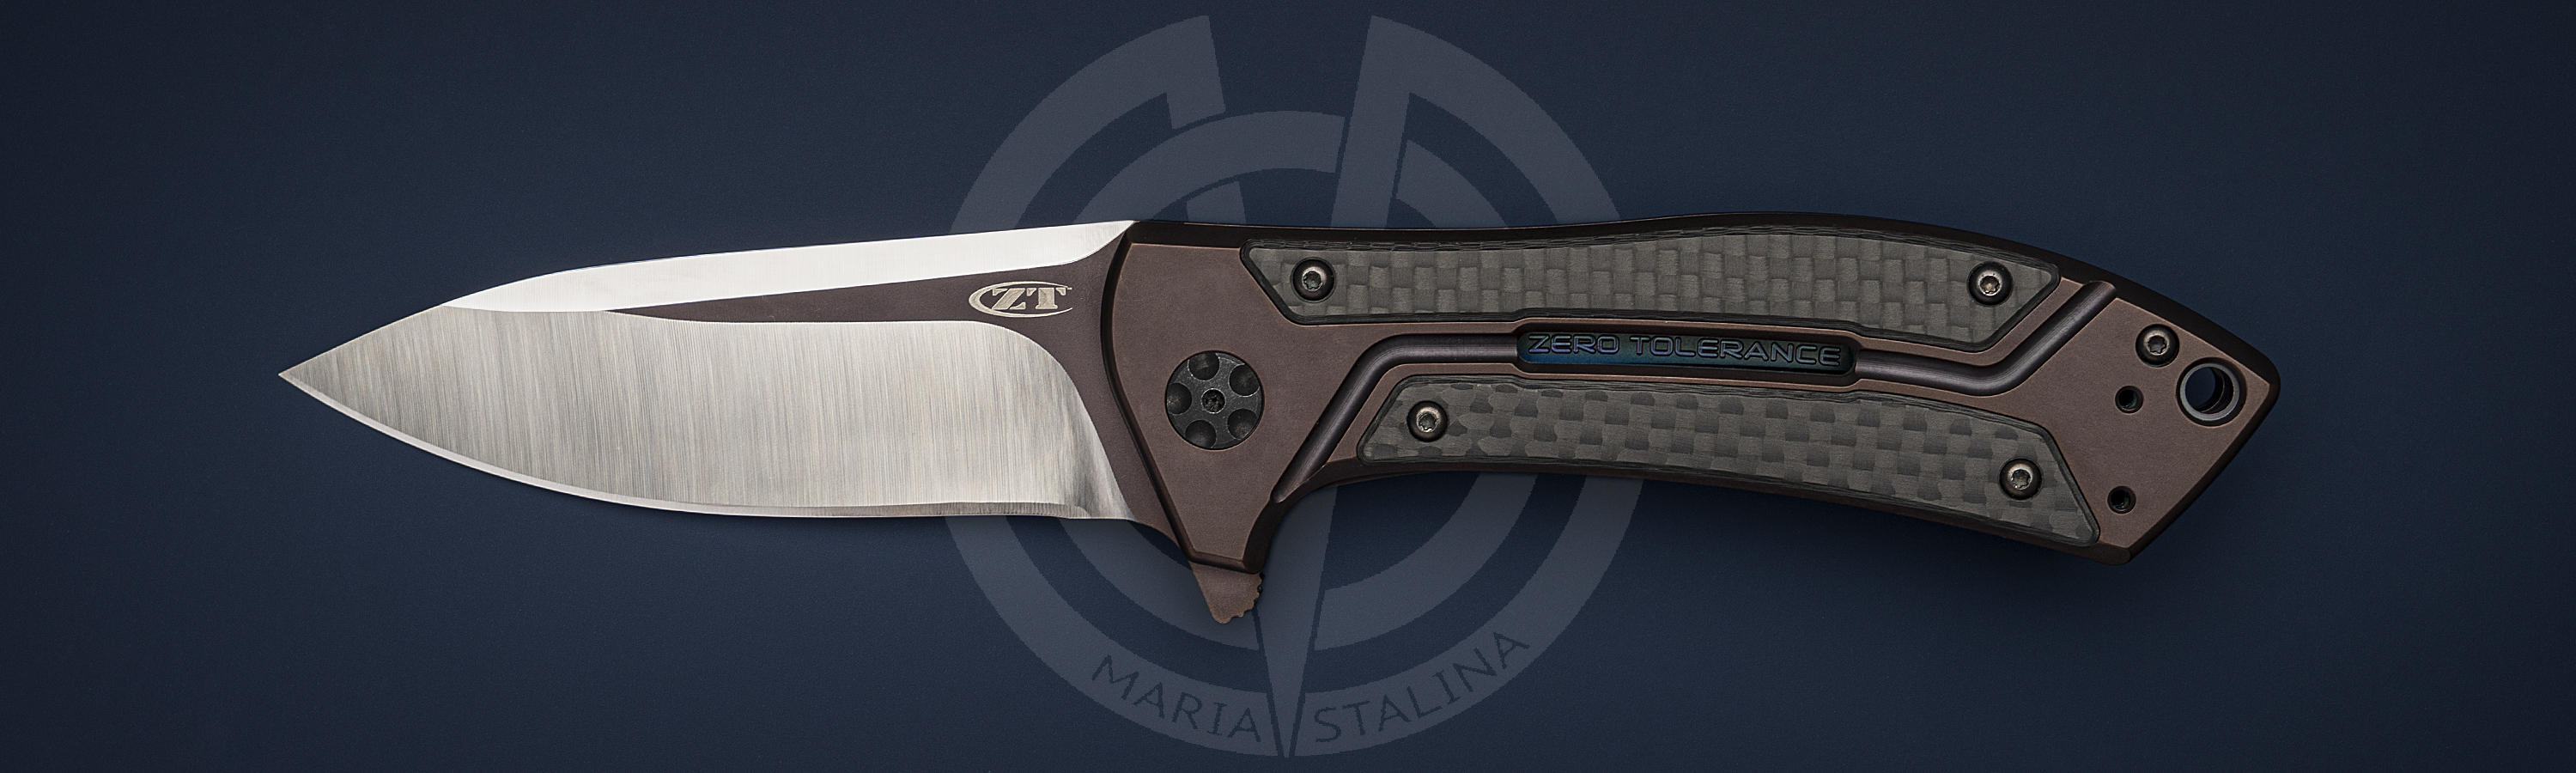 ZT 0801 CF knife